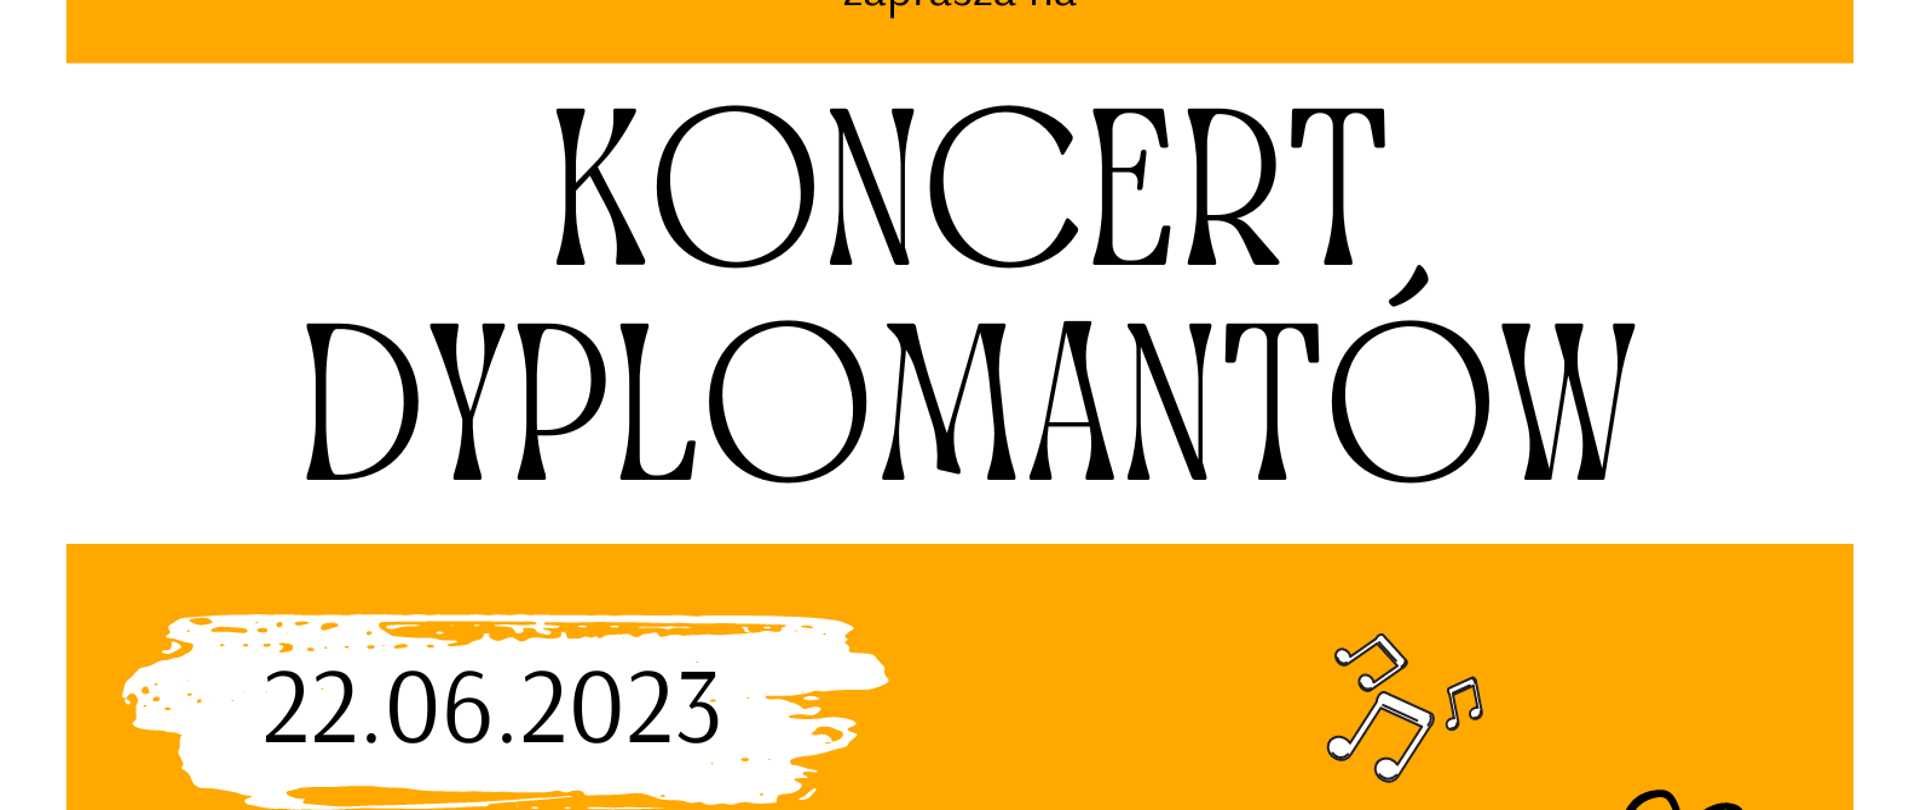 Plakat na żółtym tle z elementami instrumentów muzycznych i logo szkoły oraz tekstem ”Koncert dyplomantów 22 CZERWCA 2022 - godz. 18:00 sala koncertowa"